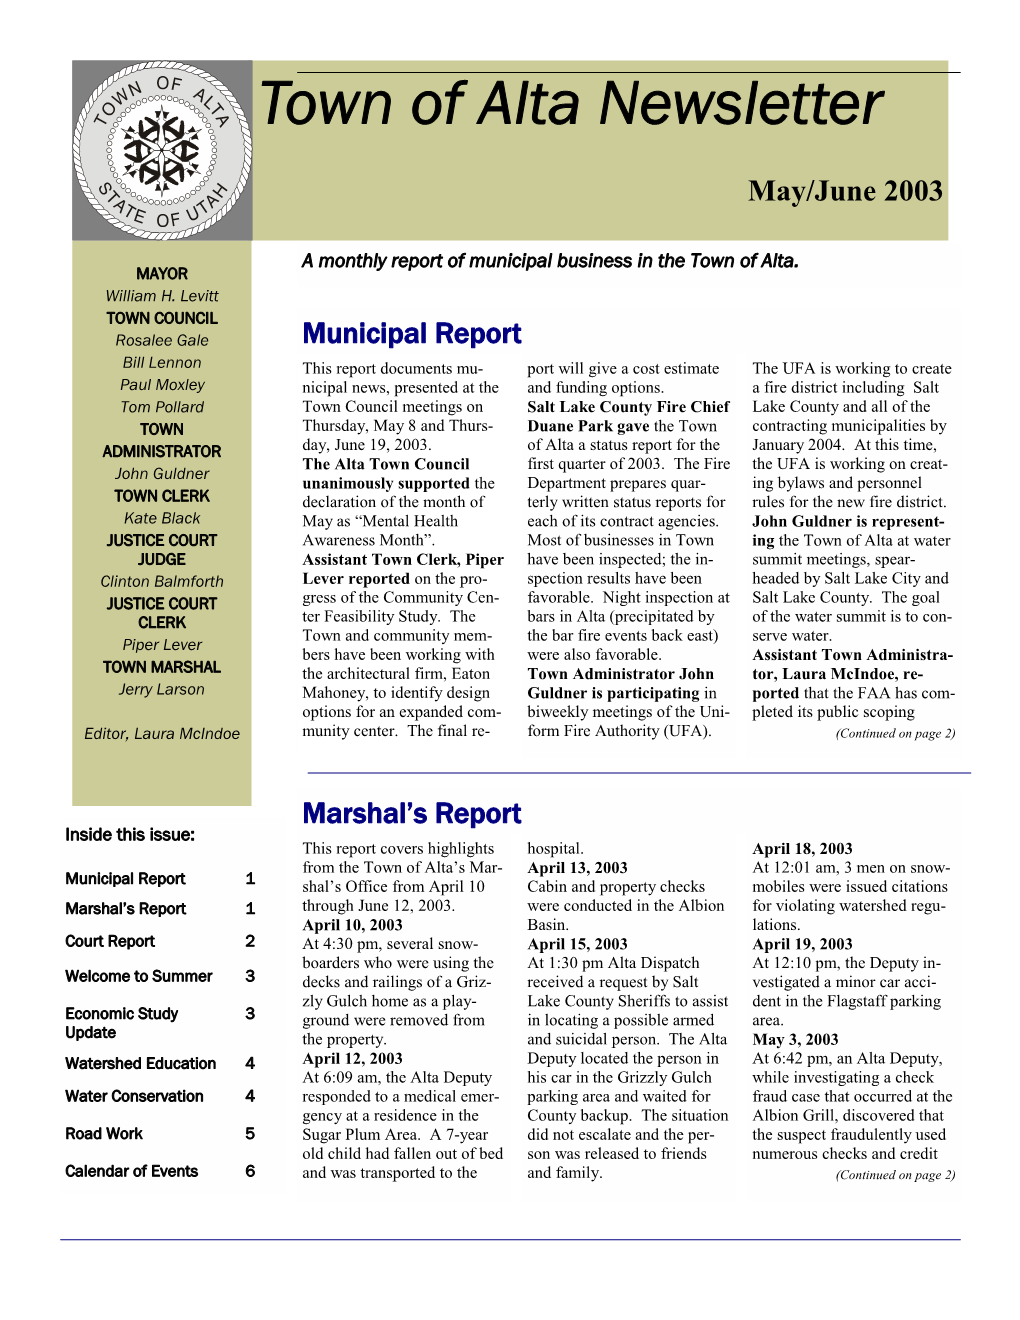 Mayjune 2003 Newsletter